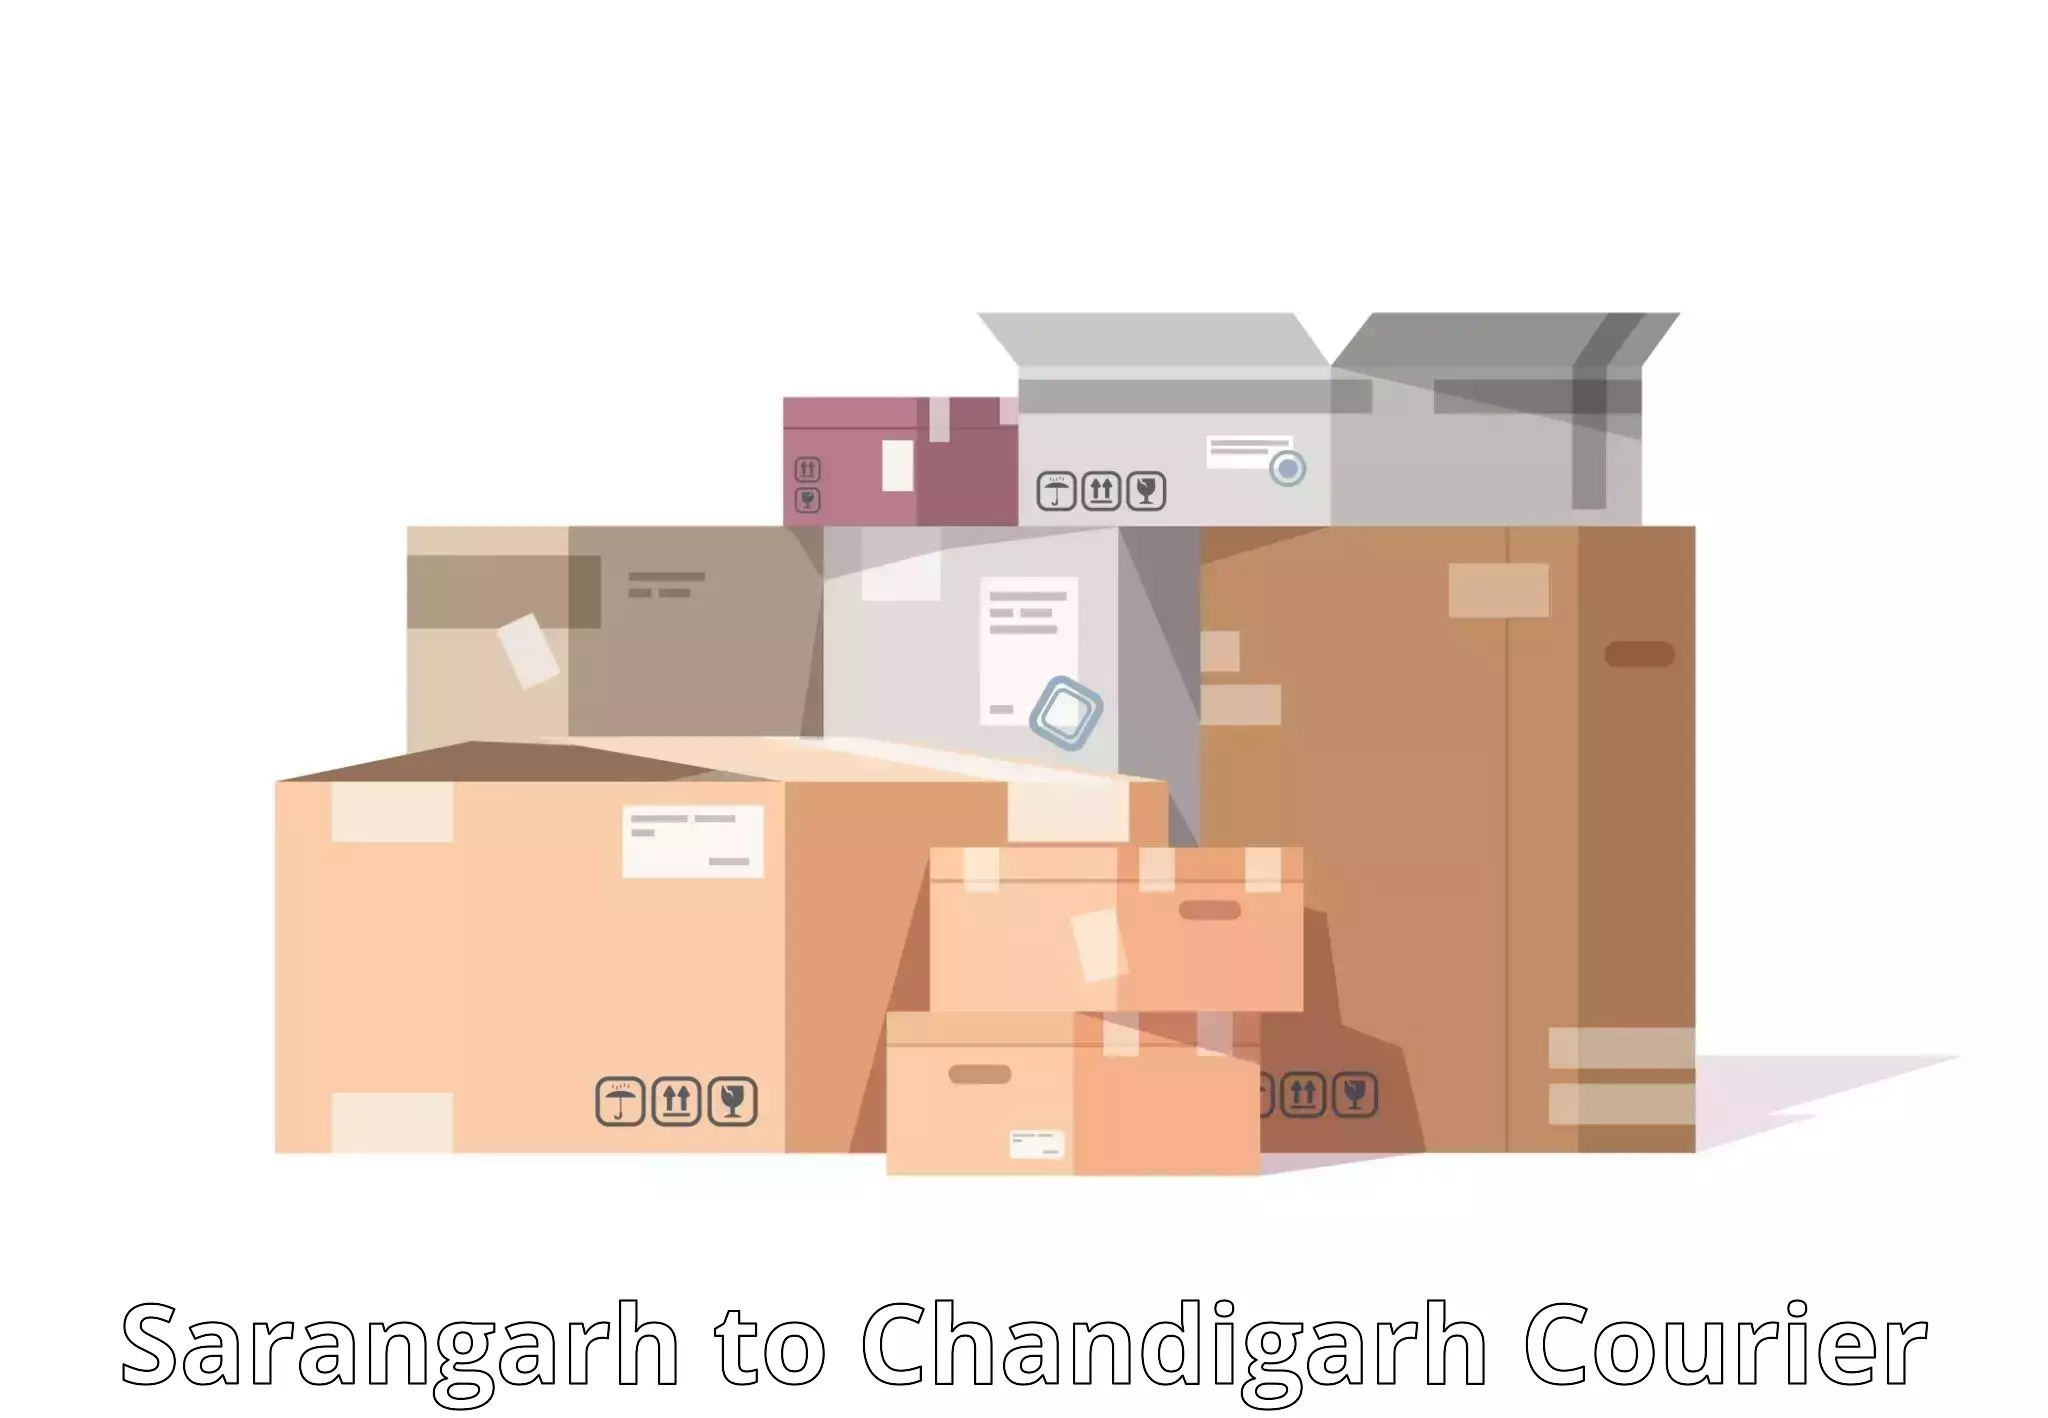 Multi-carrier shipping Sarangarh to Chandigarh